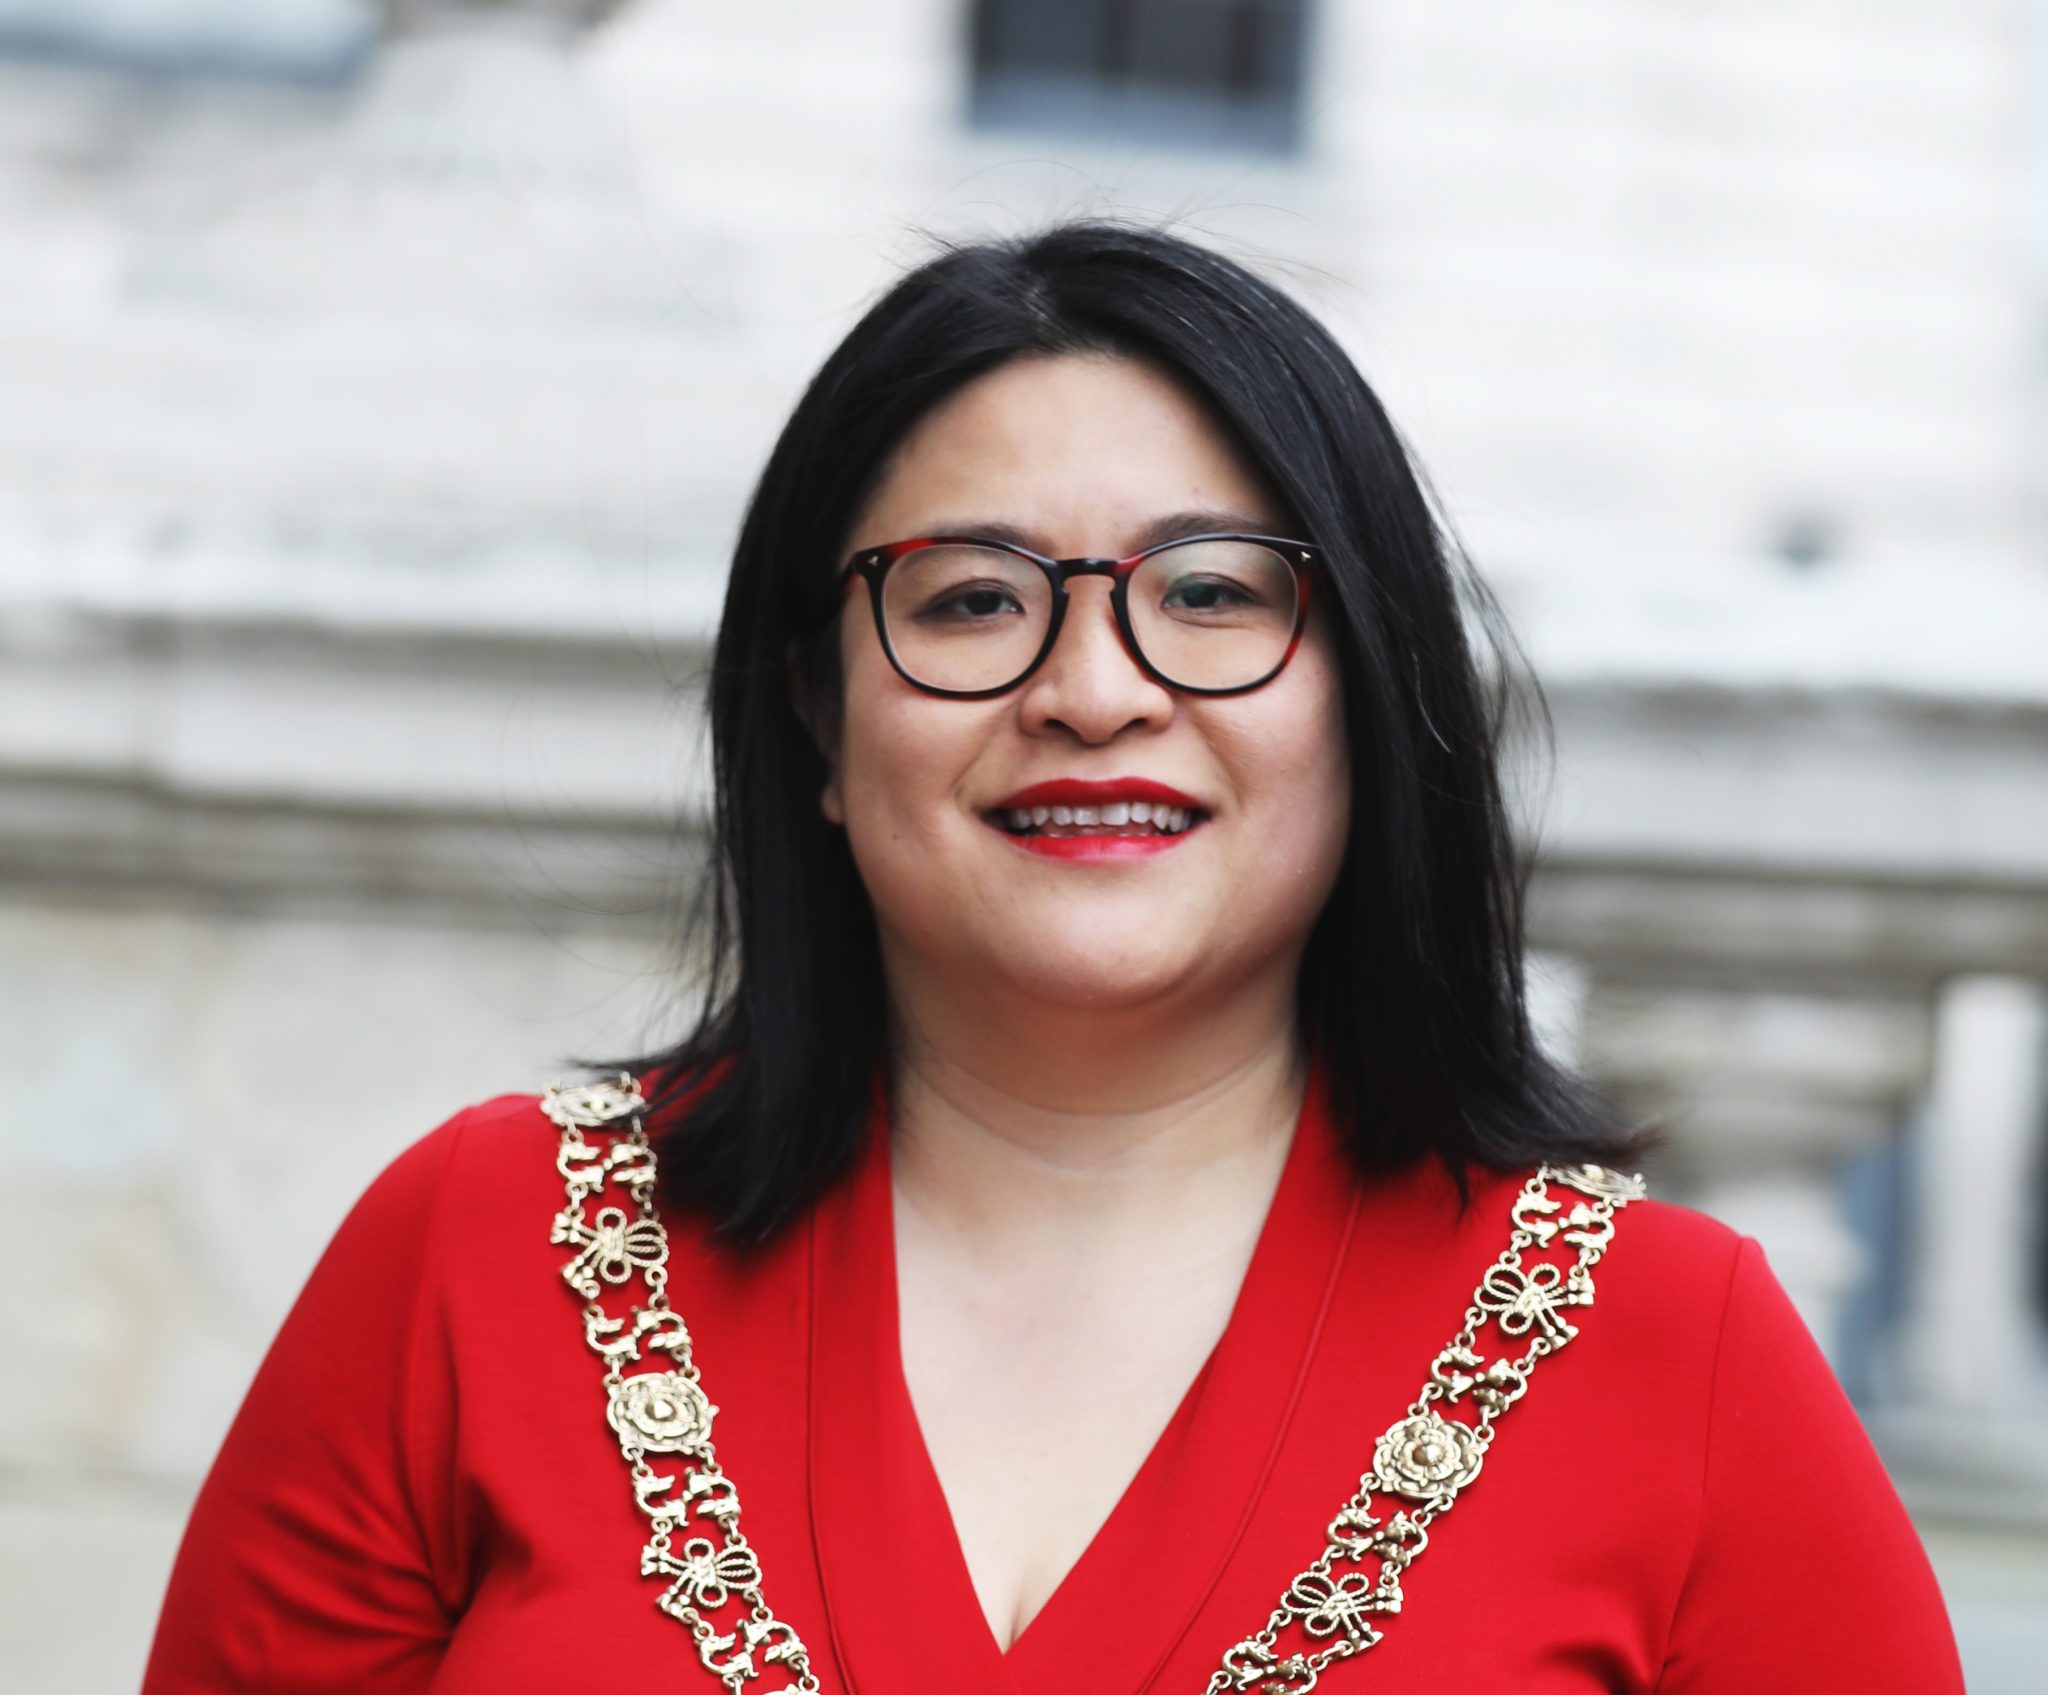 Lord Mayor of Dublin Hazel Chu outside Dublin City Hall in July 2020